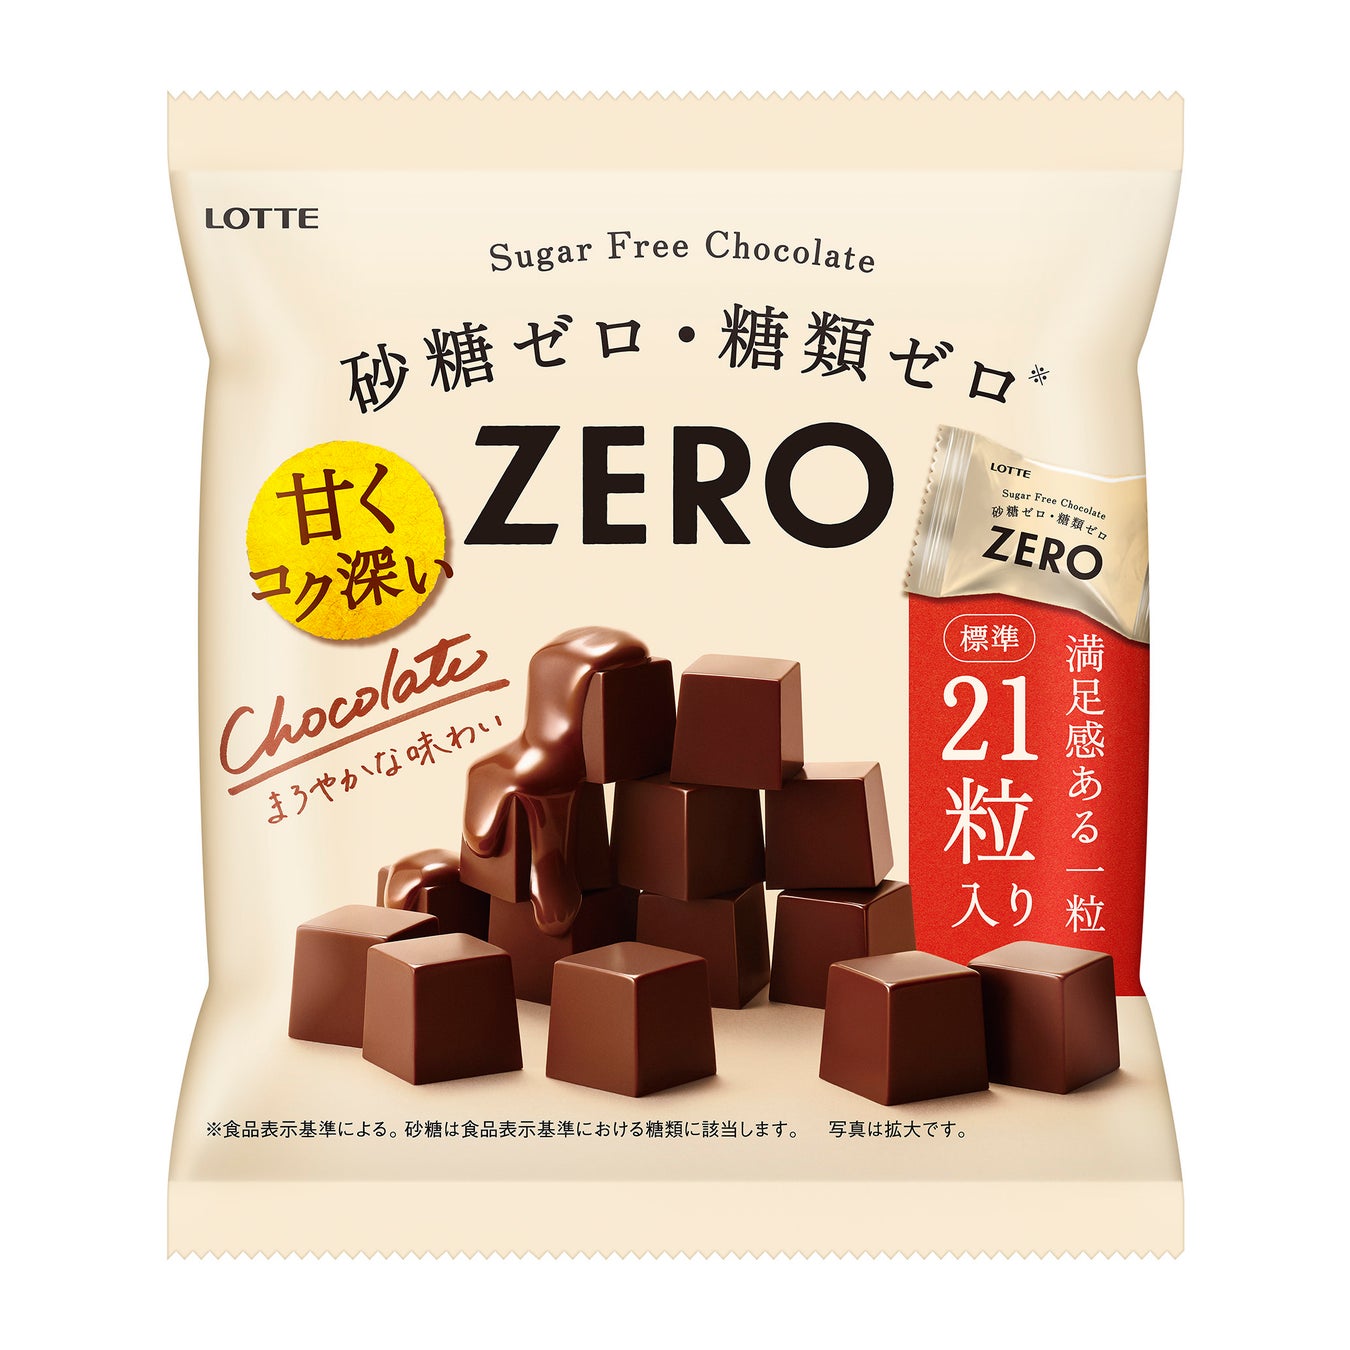 ファミリーパックのプラスチック使用量削減とスマイルエコマーク導入の取り組みが「2022日本パッケージングコンテスト」にて「菓子包装部門賞」を受賞いたしました。のサブ画像1_ファミリーパック商品の一例 「ゼロ チョコレート〈袋〉」